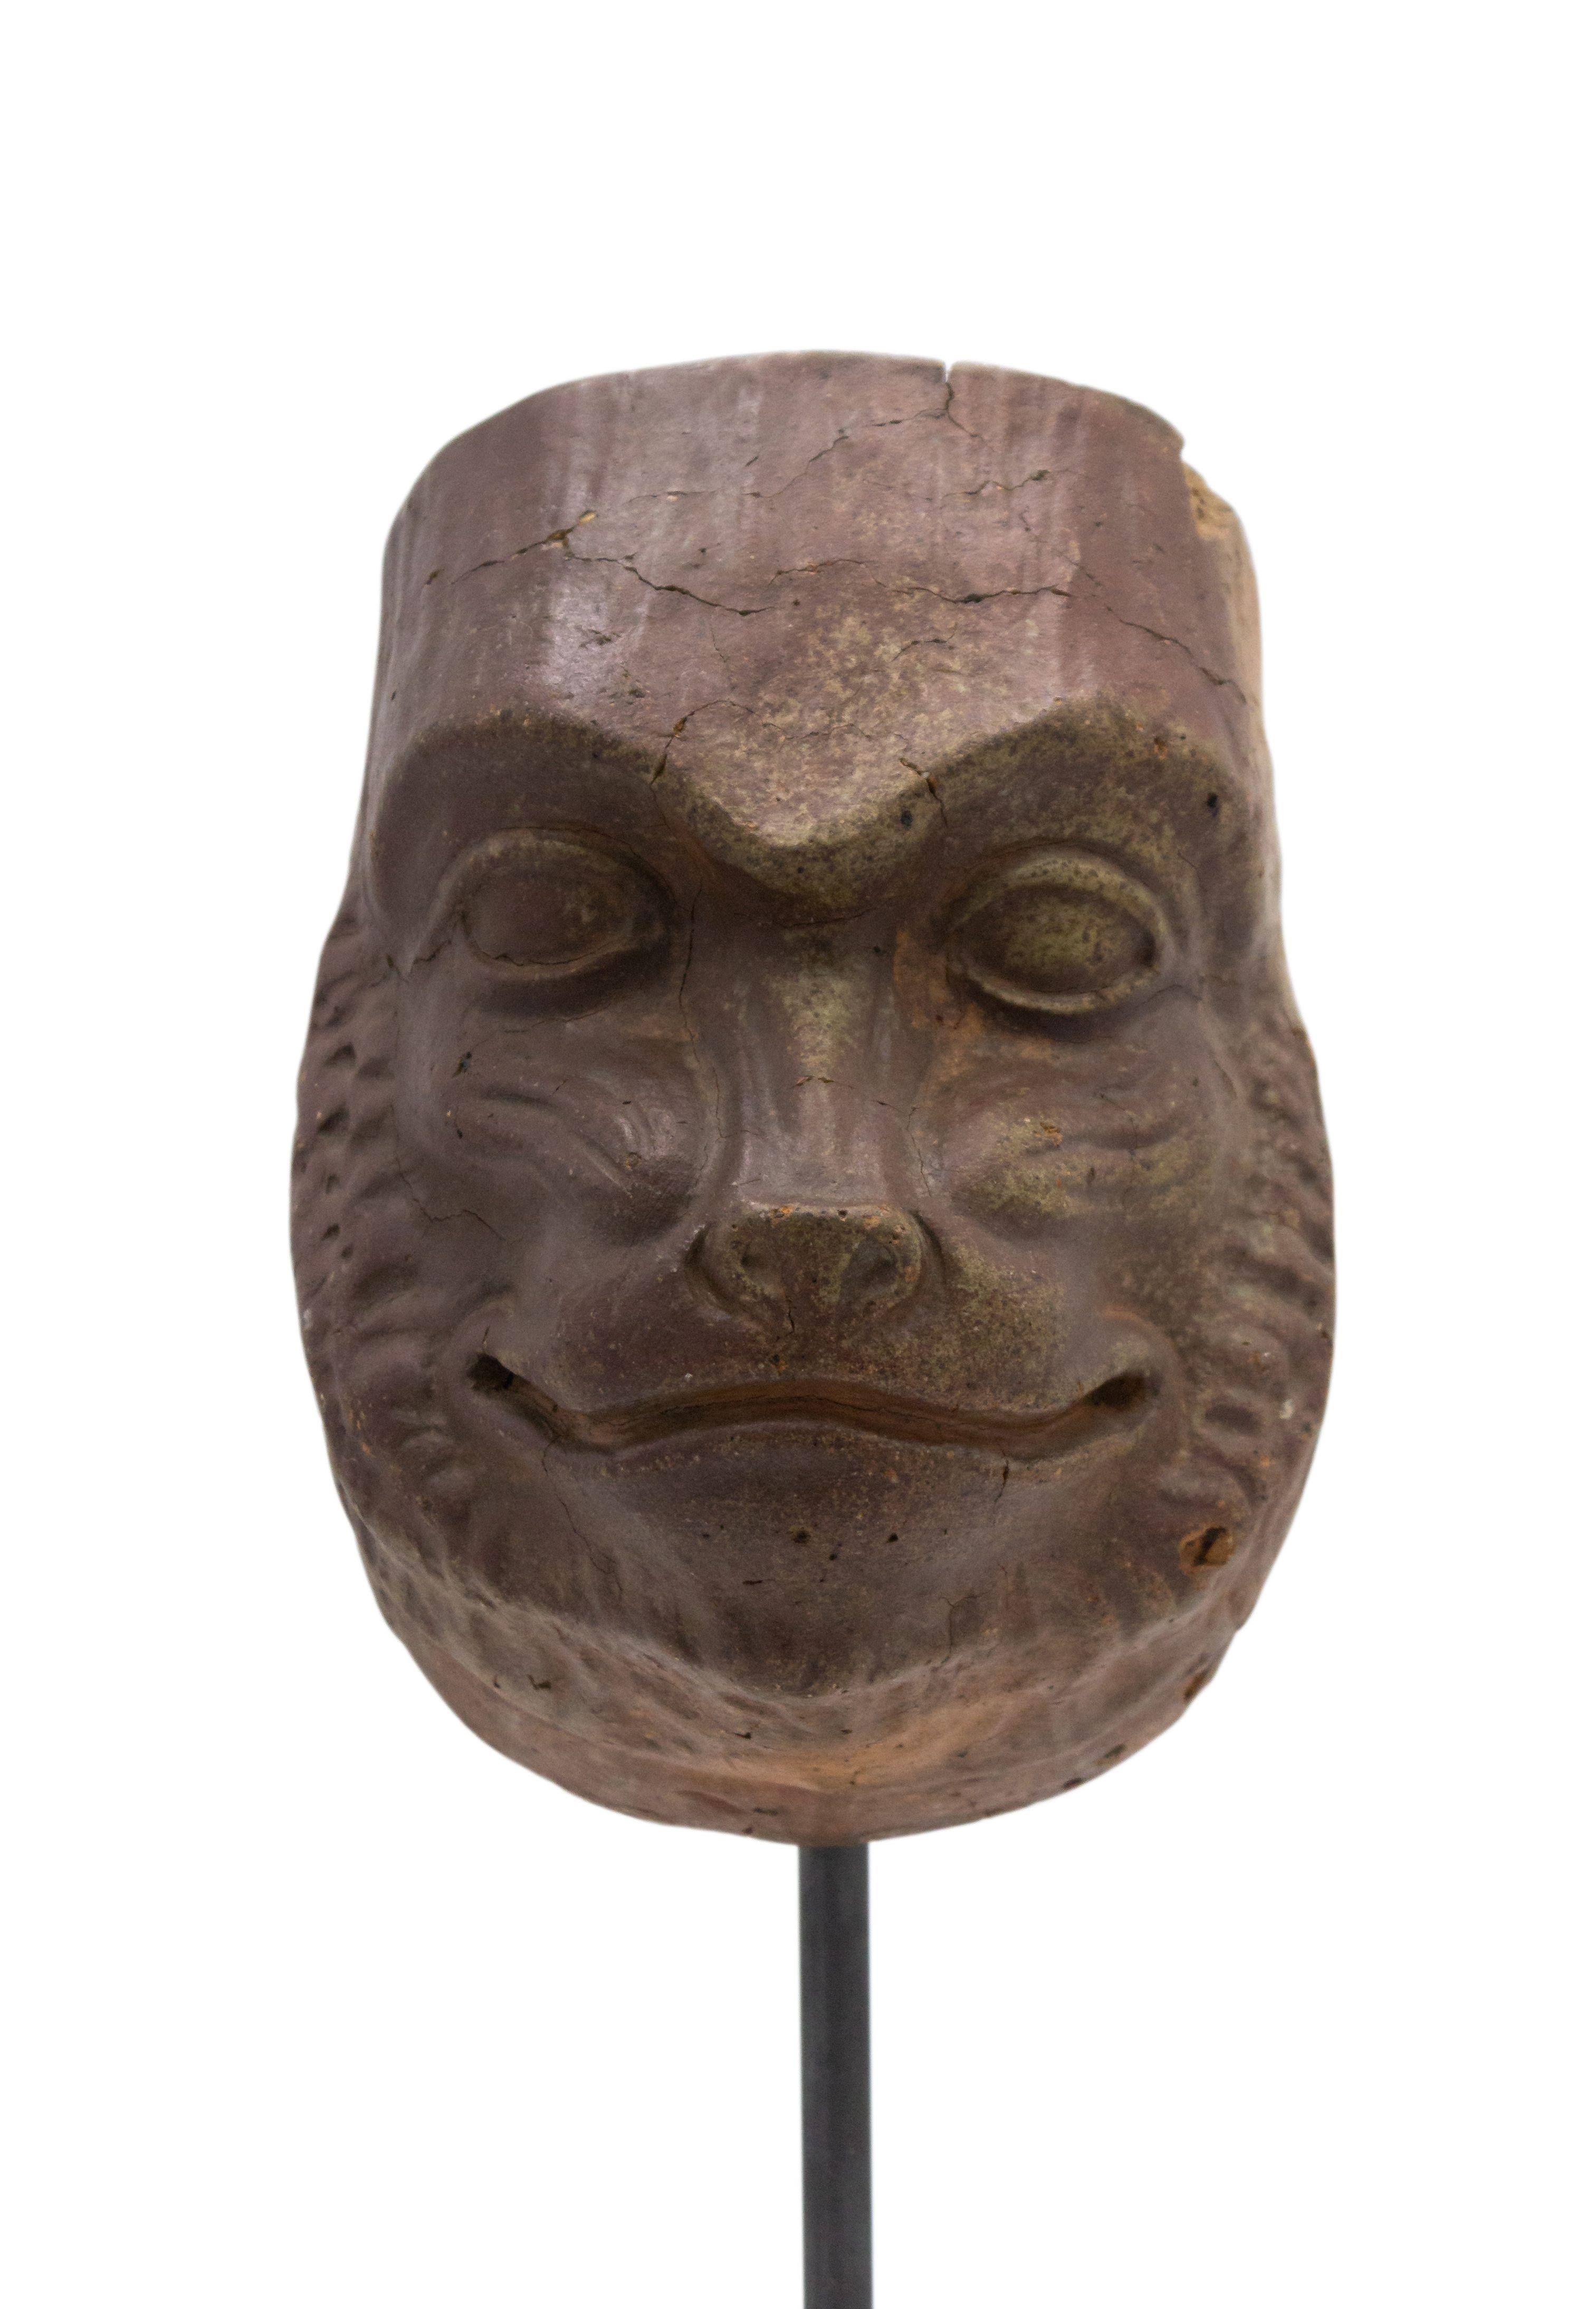 Moule de masque de maître en terre cuite sculpté en Allemagne continentale (fin du XIXe siècle) représentant un visage de babouin souriant, présenté sur un socle carré en marbre noir (faisant partie d'une collection).
 